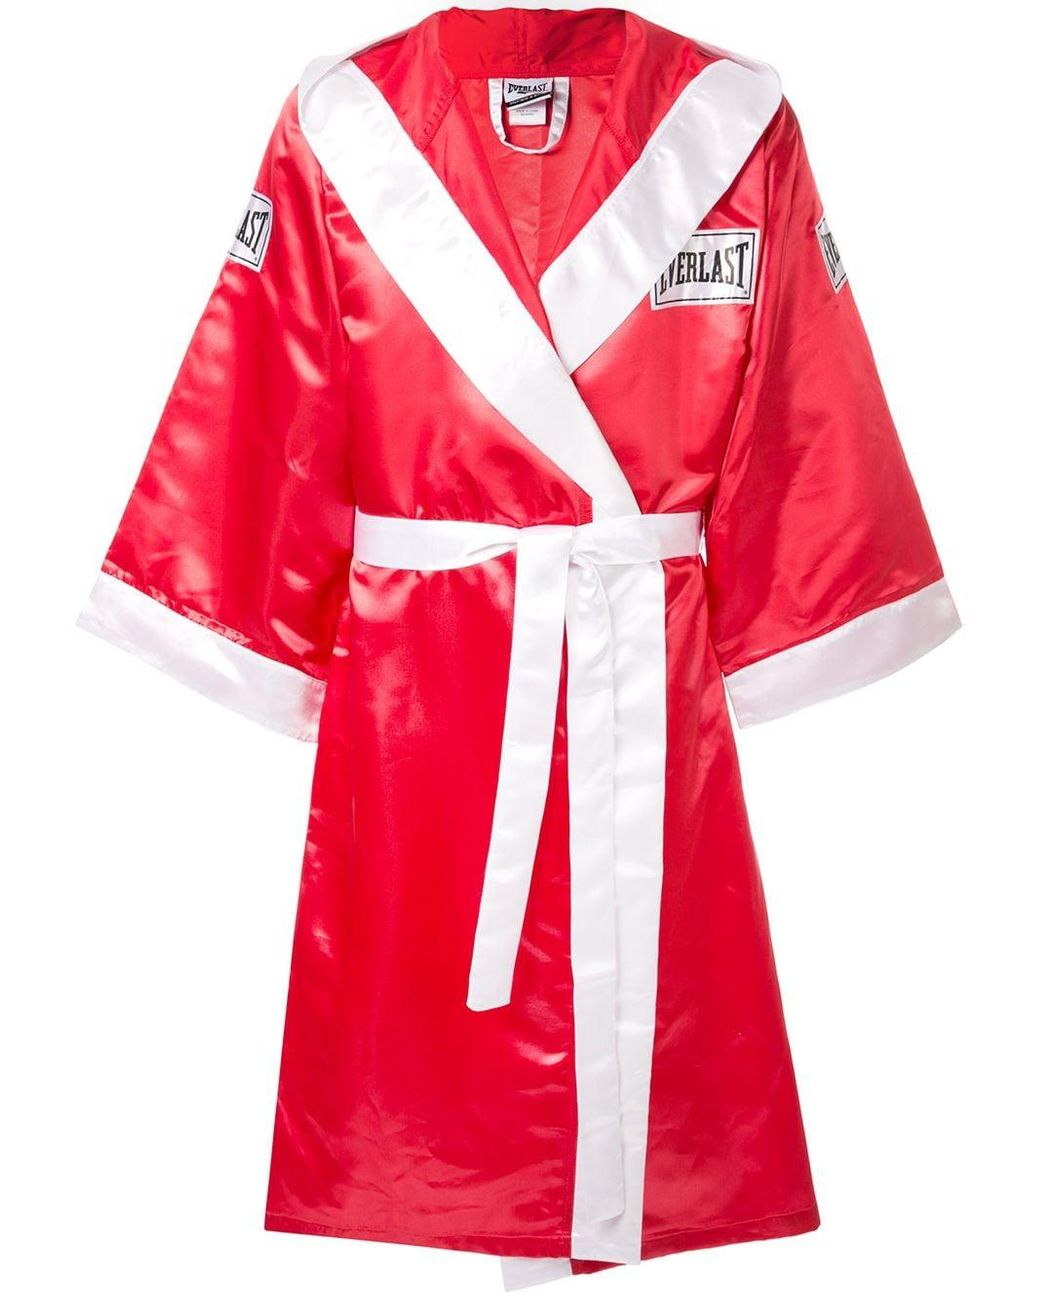 Supreme X Everlast Satin Boxing Robe in Red for Men